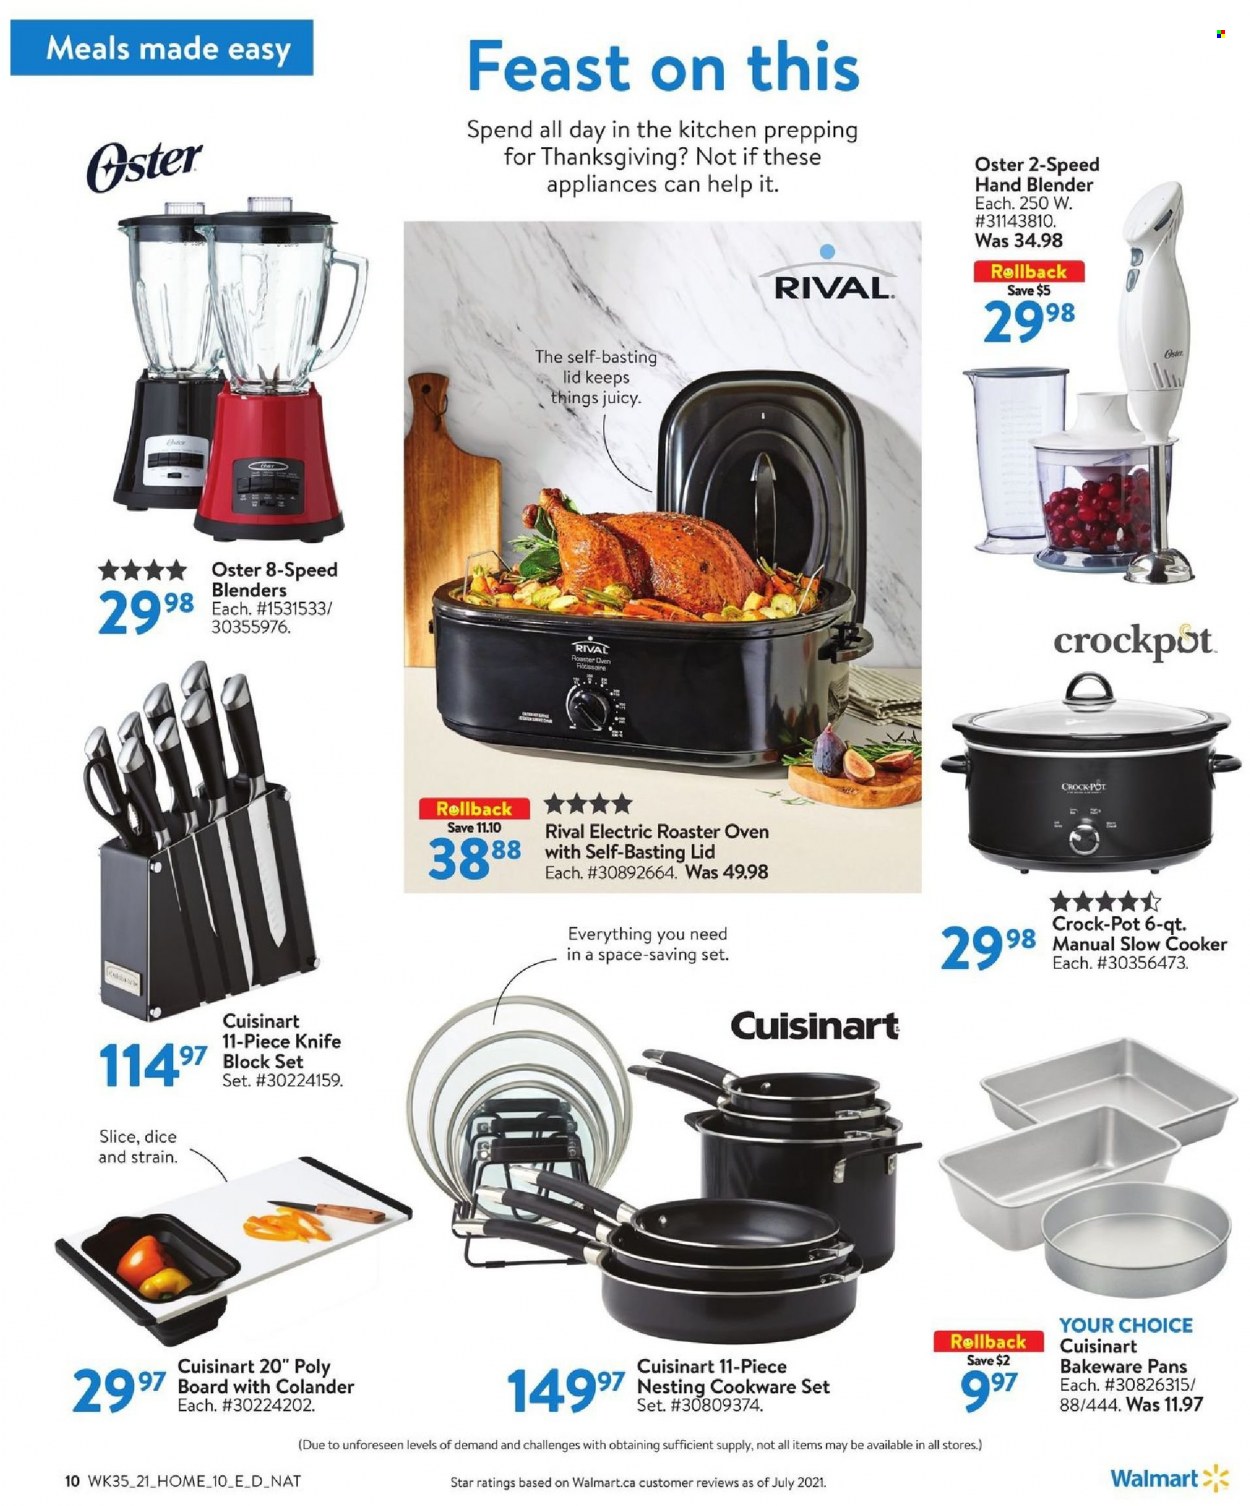 thumbnail - Walmart Flyer - September 23, 2021 - October 20, 2021 - Sales products - colander, cookware set, knife, lid, pot, bakeware, Cuisinart, oven, slow cooker, CrockPot, roaster, hand blender. Page 10.